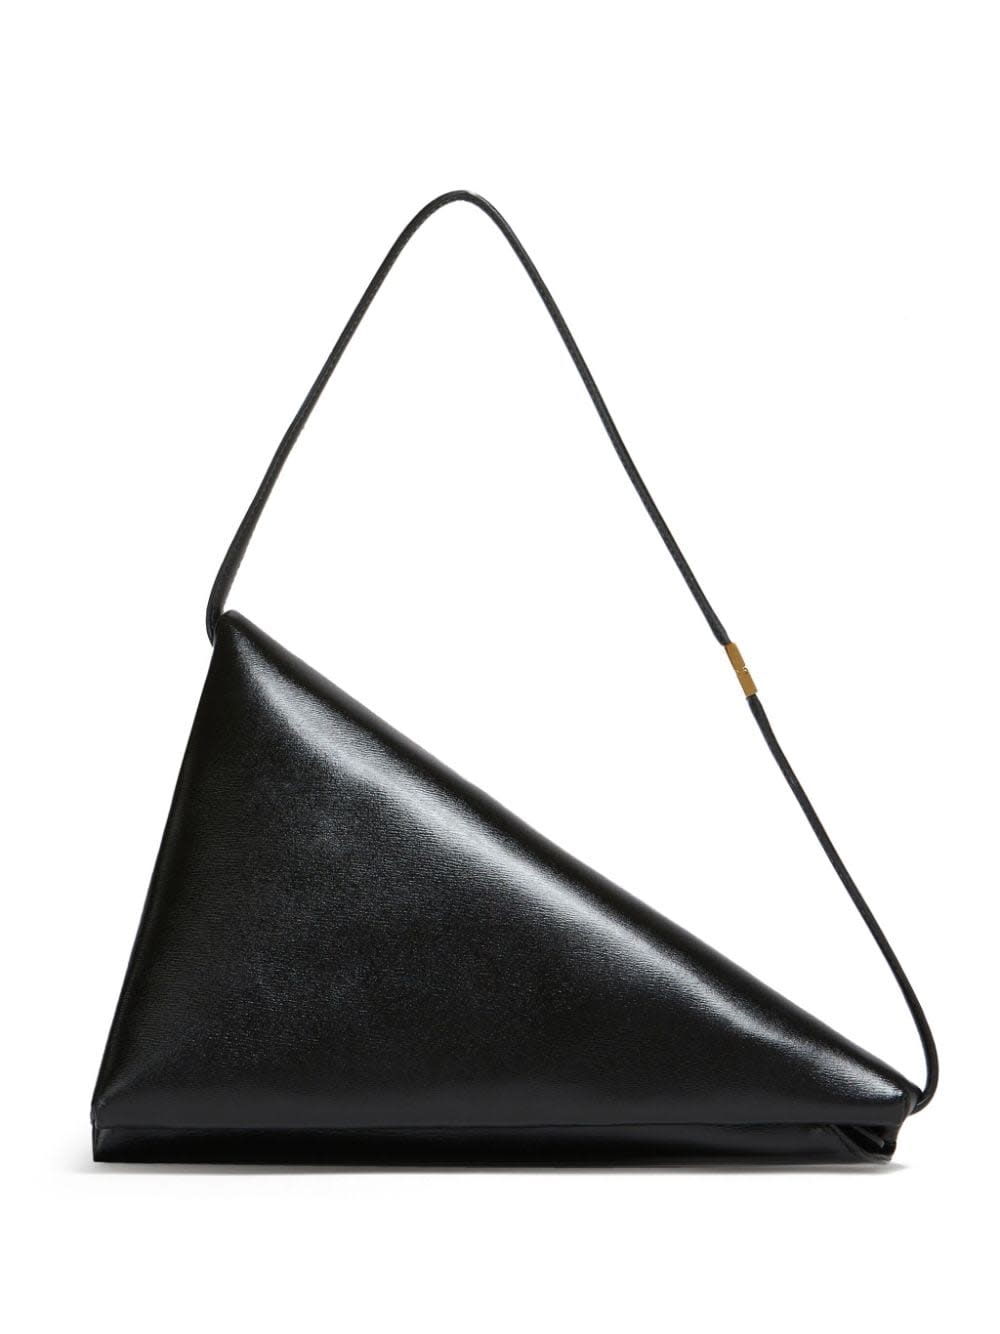 Marni Prisma Triangle Bag